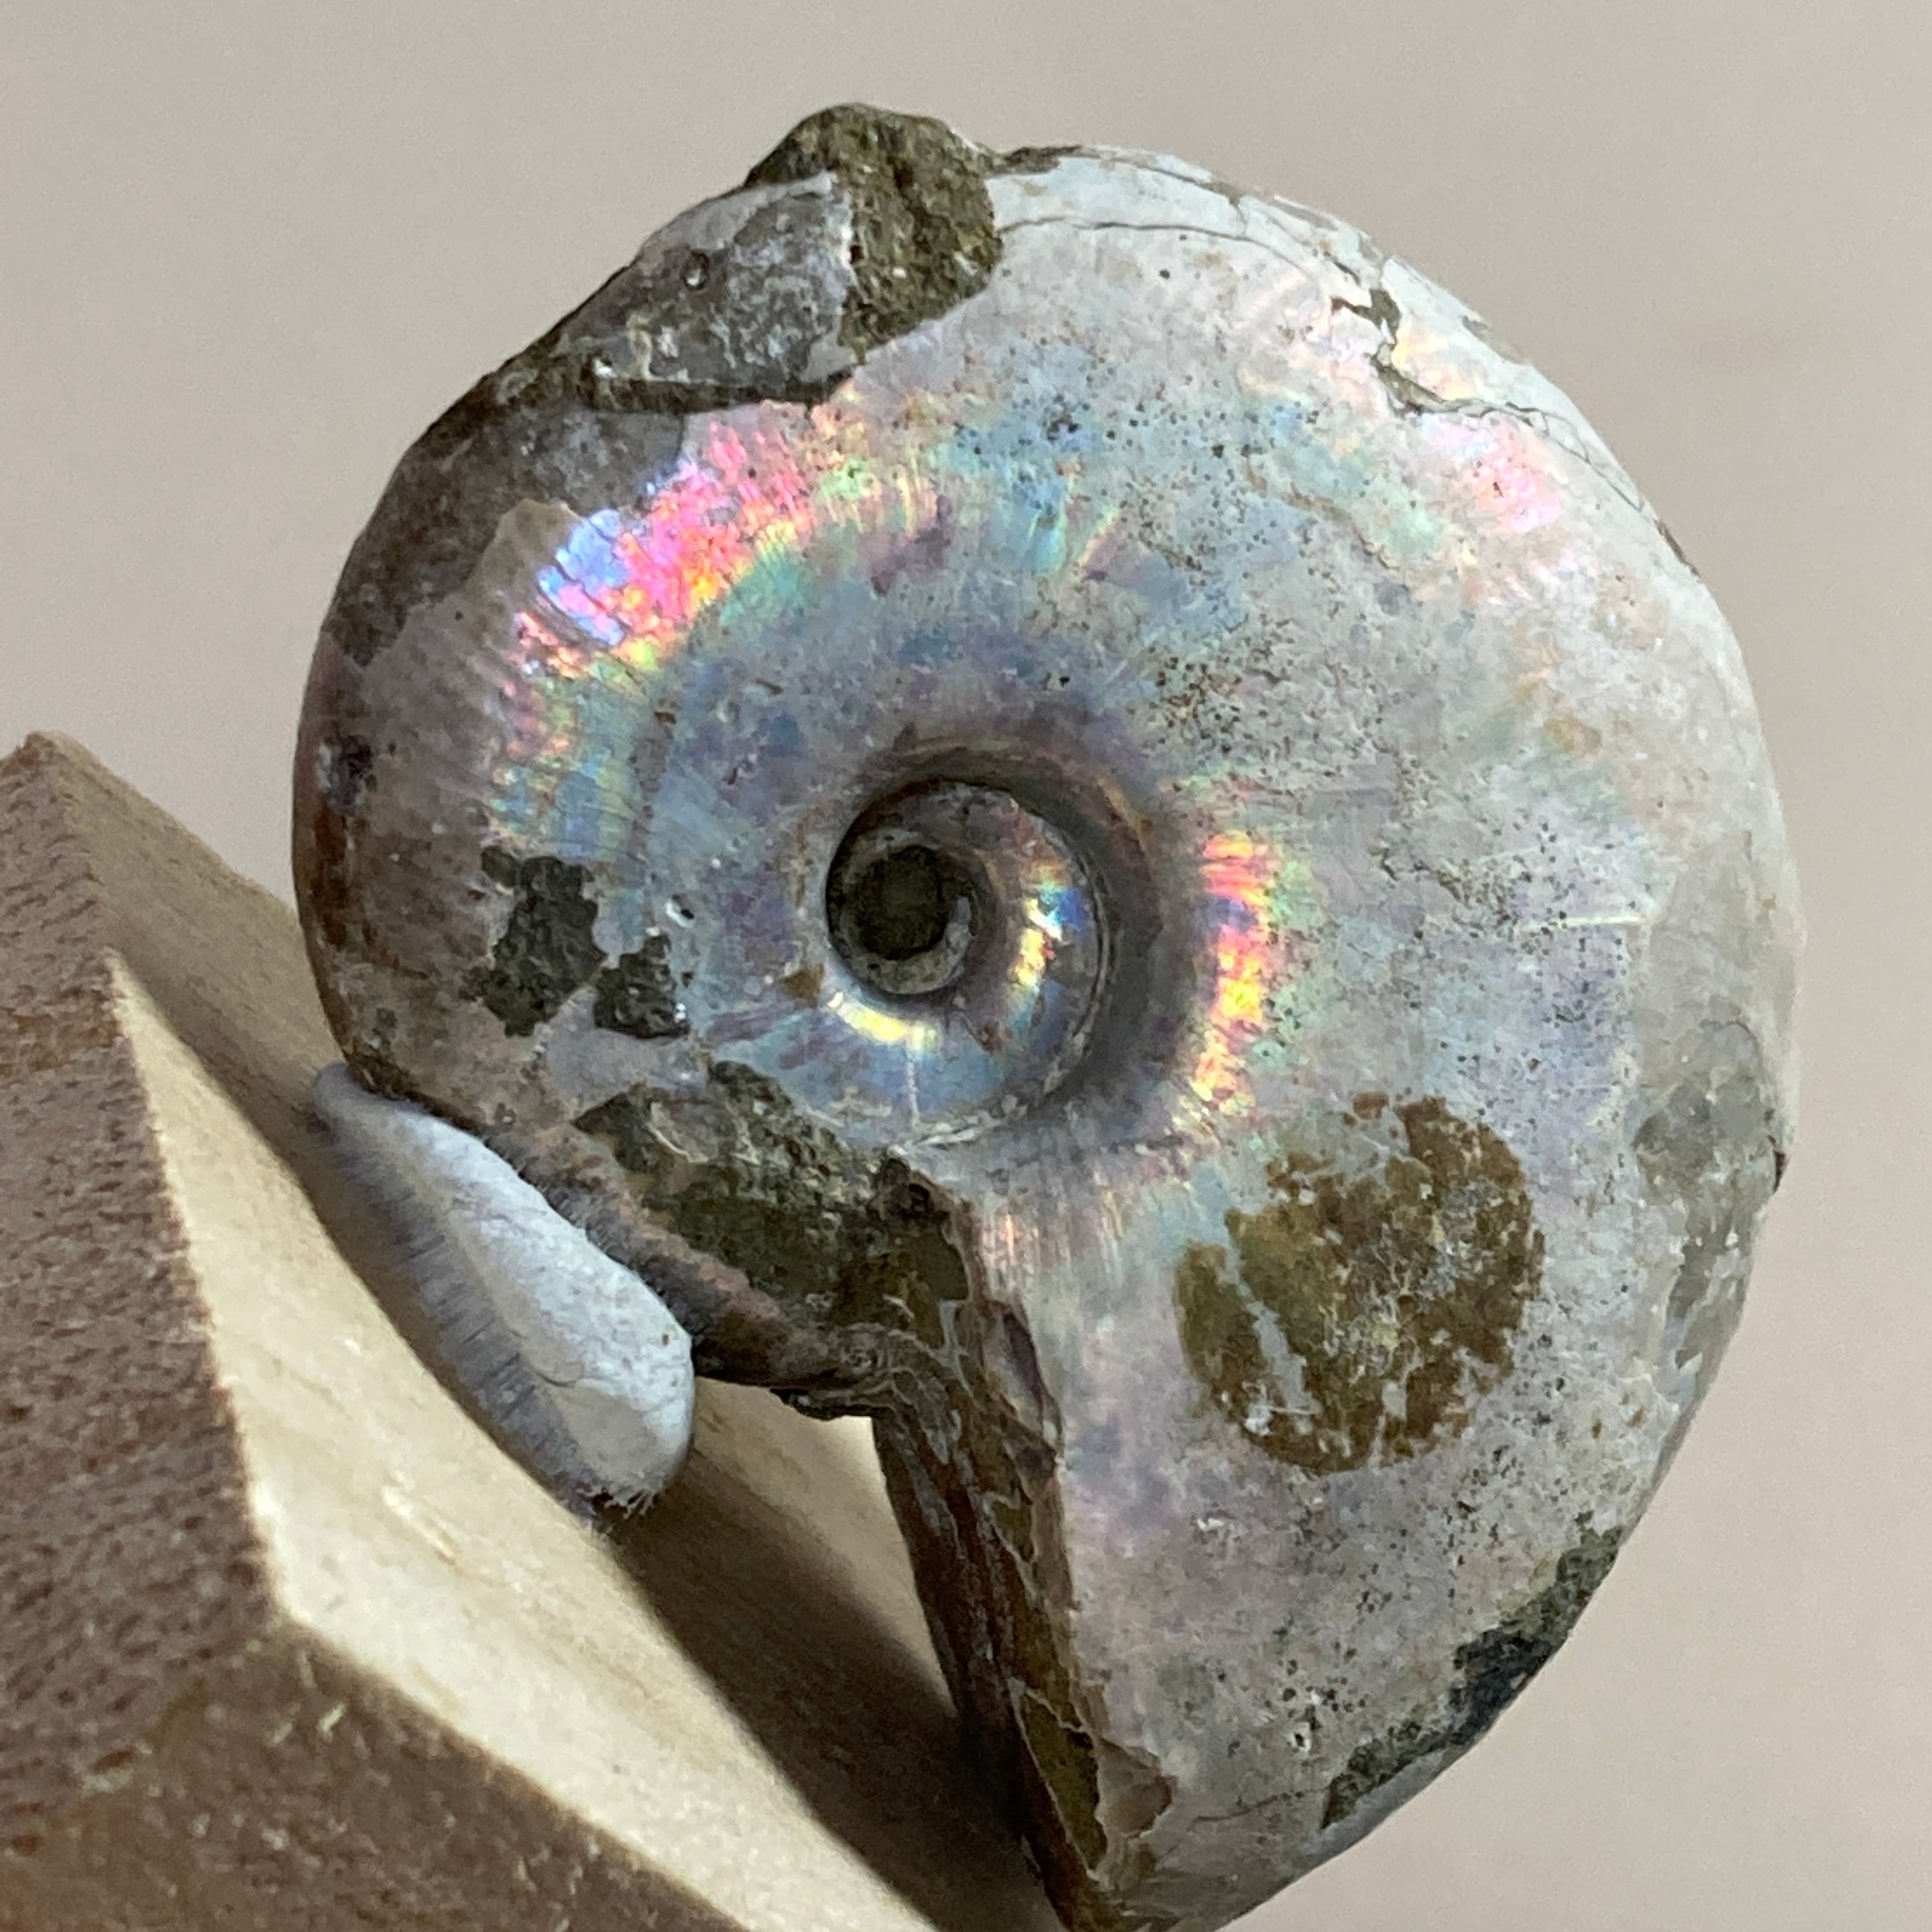 三葉虫 化石 fossil 海 ボリビア産 trilobite 海生動物判別②+sma